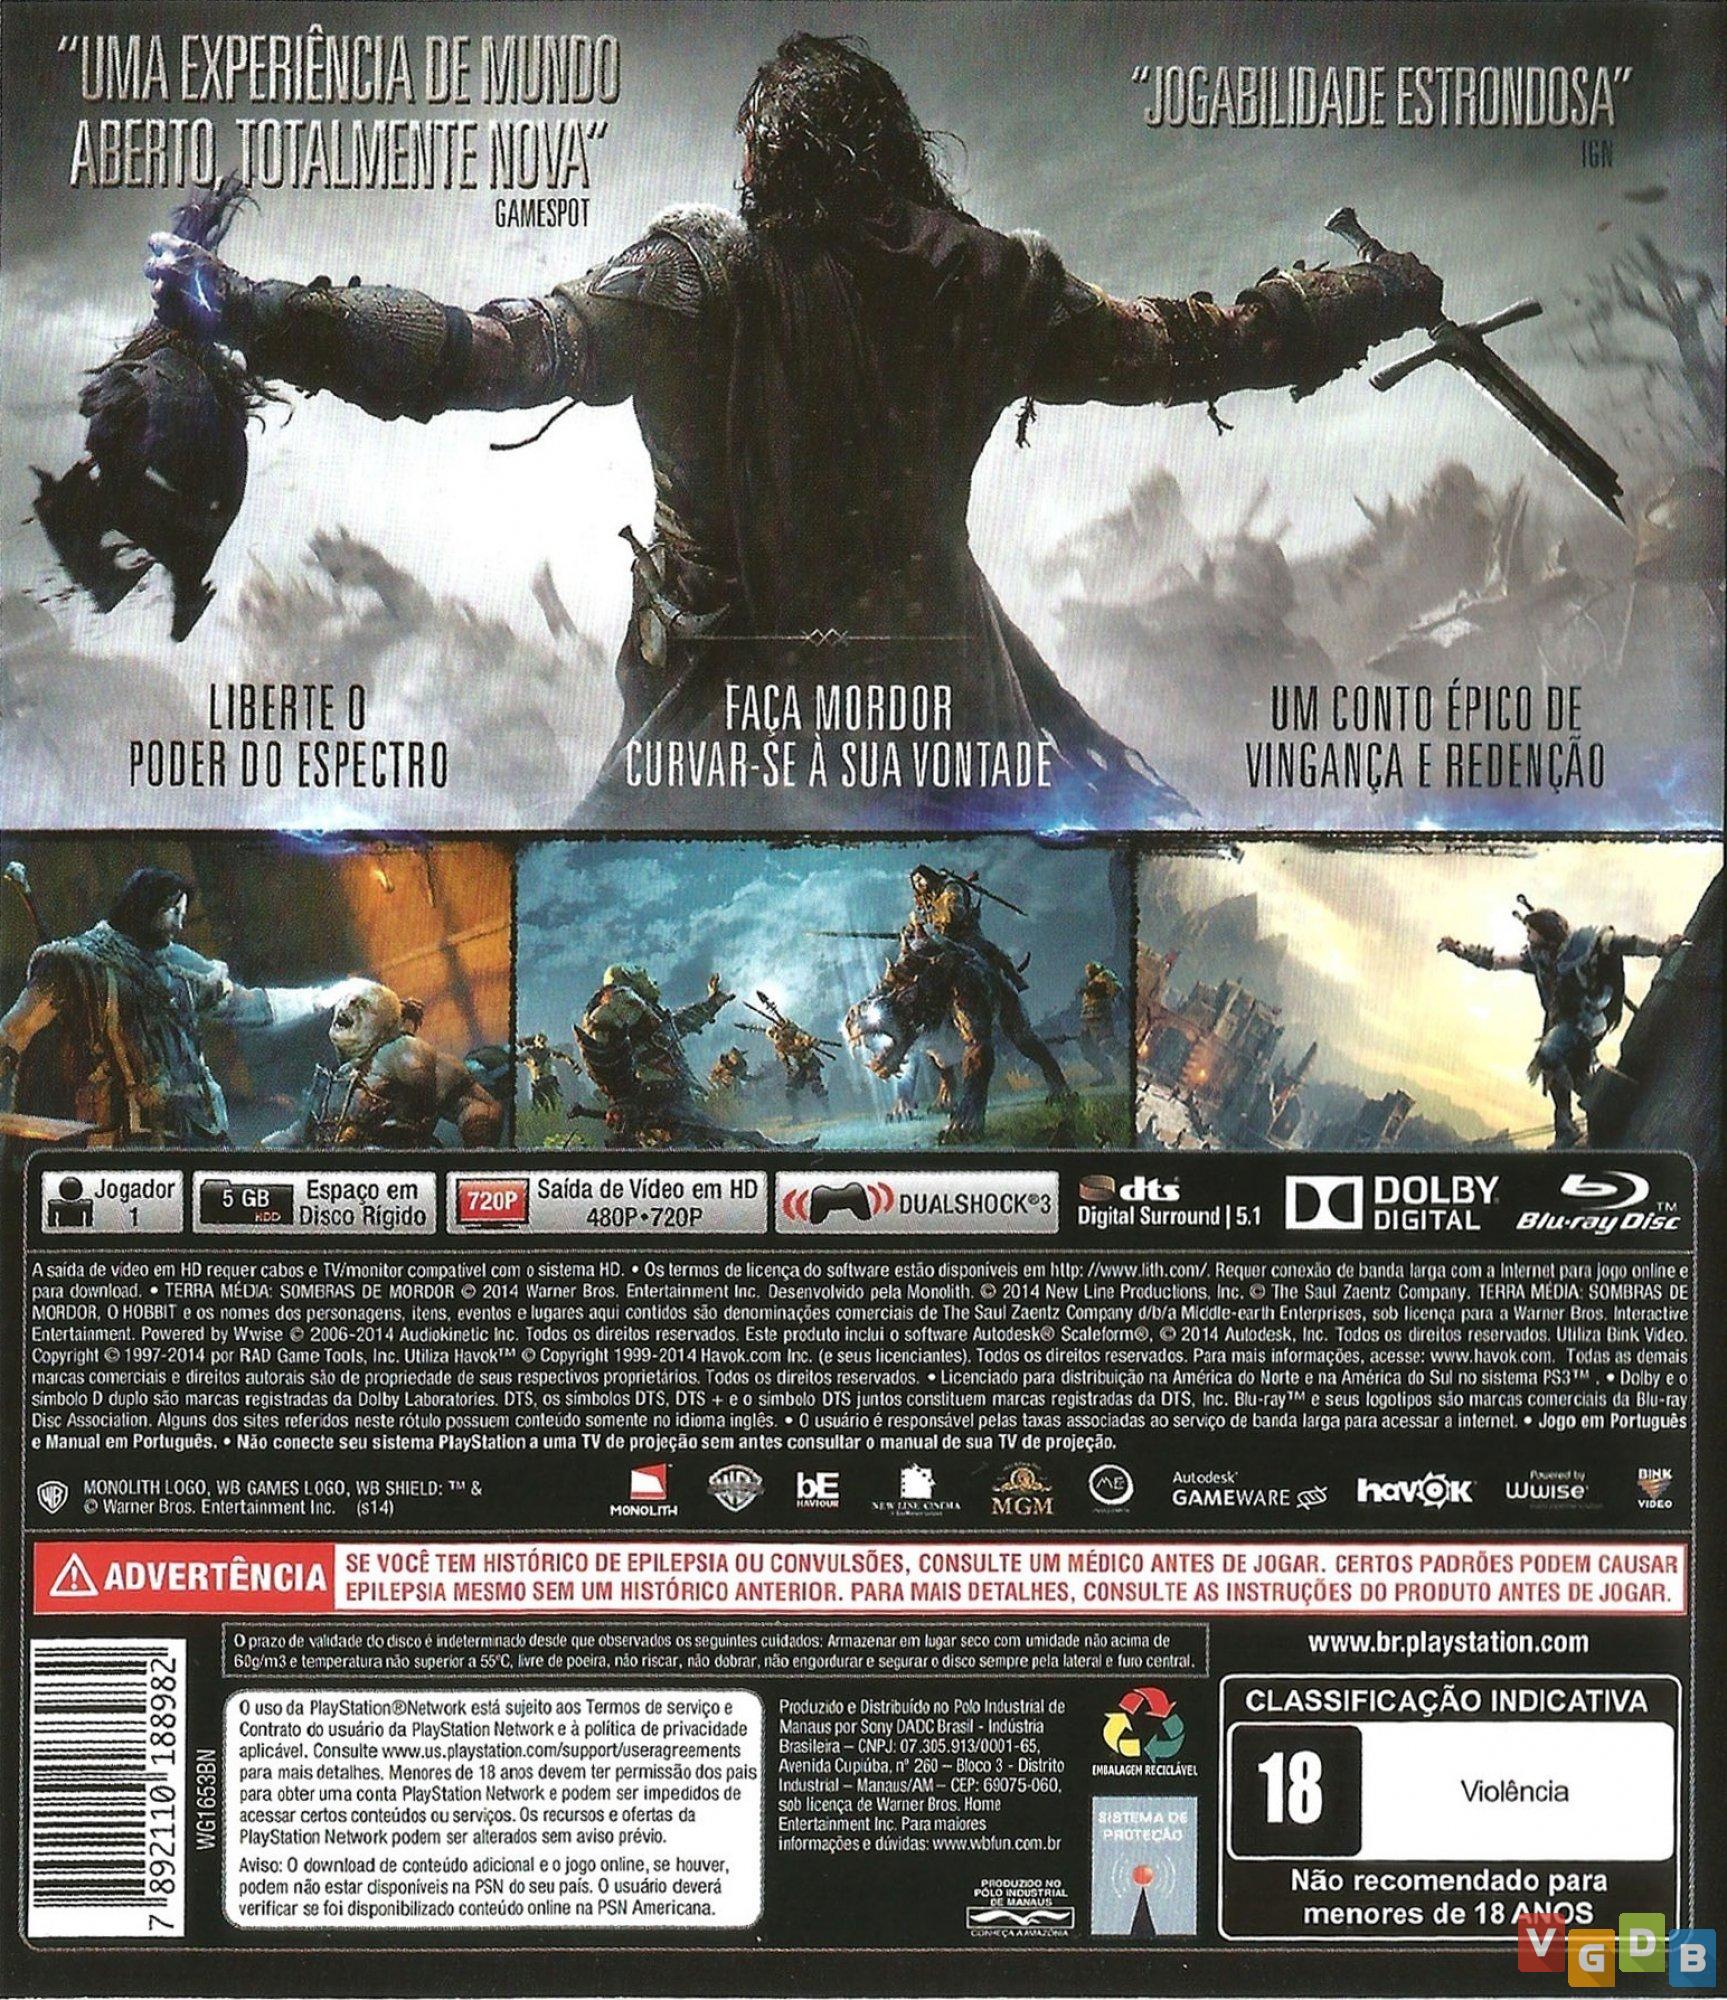 Terra Média Sombras da Guerra para Xbox One - Sony - Jogos de Ação